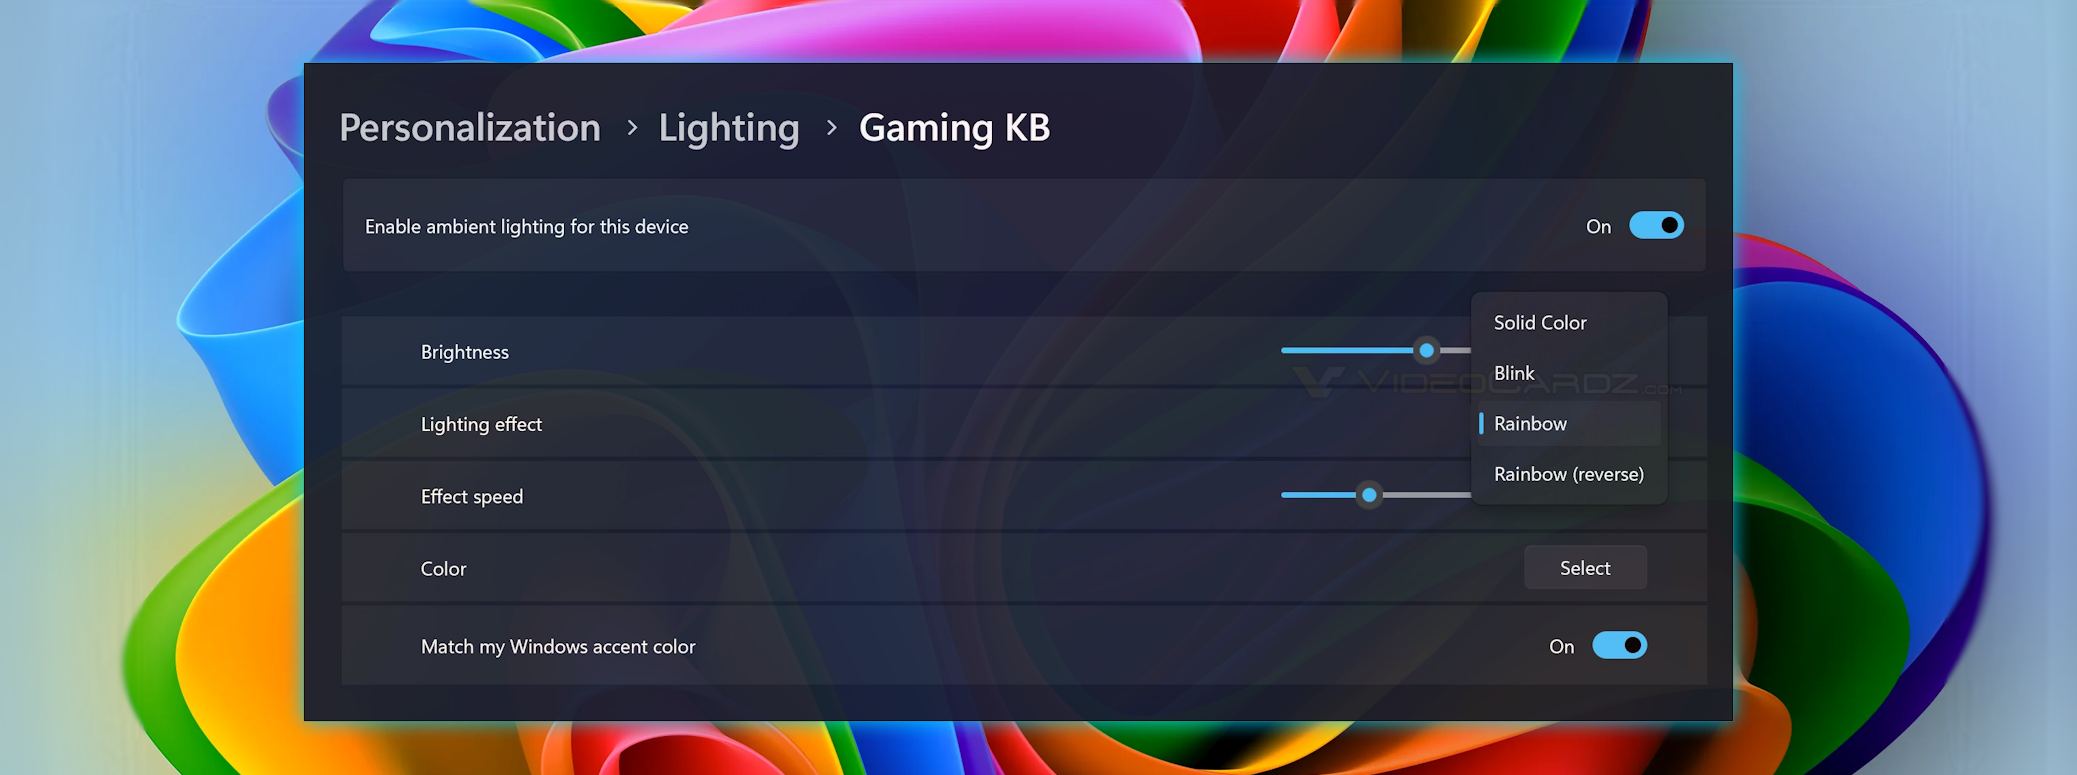 Windows 11 doda kontrolę nad urządzeniami z podświetleniem RGB